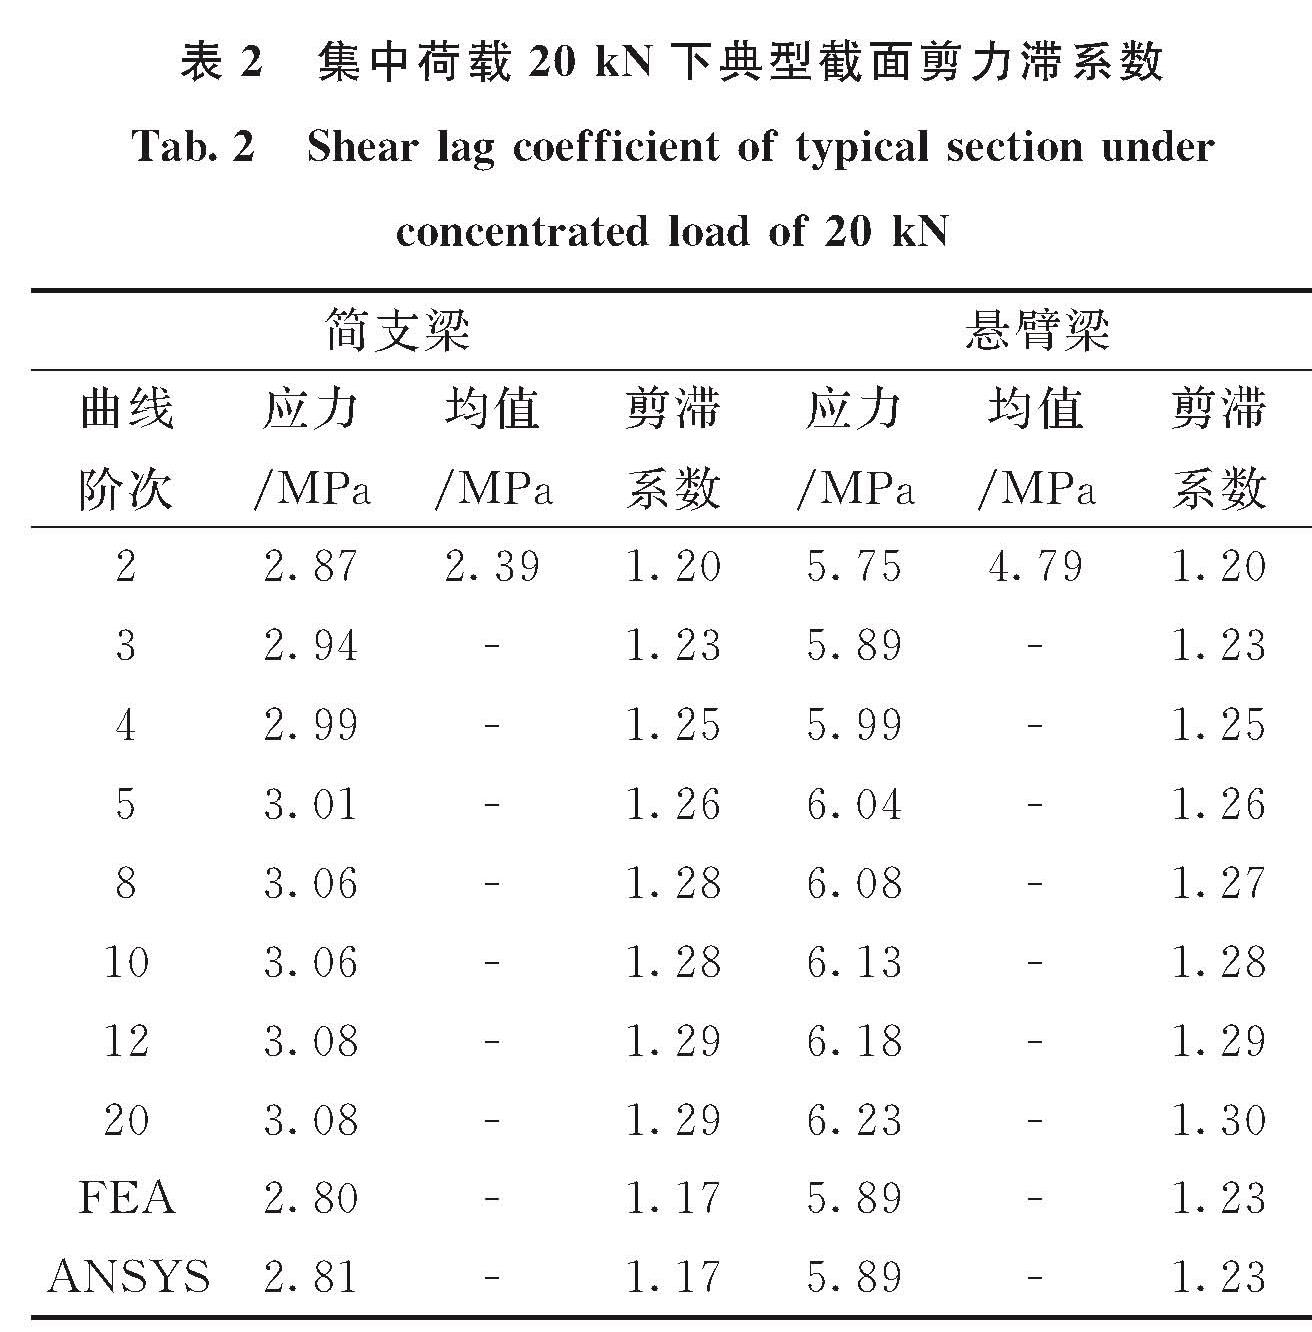 表2 集中荷载20 kN下典型截面剪力滞系数<br/>Tab.2 Shear lag coefficient of typical section under concentrated load of 20 kN